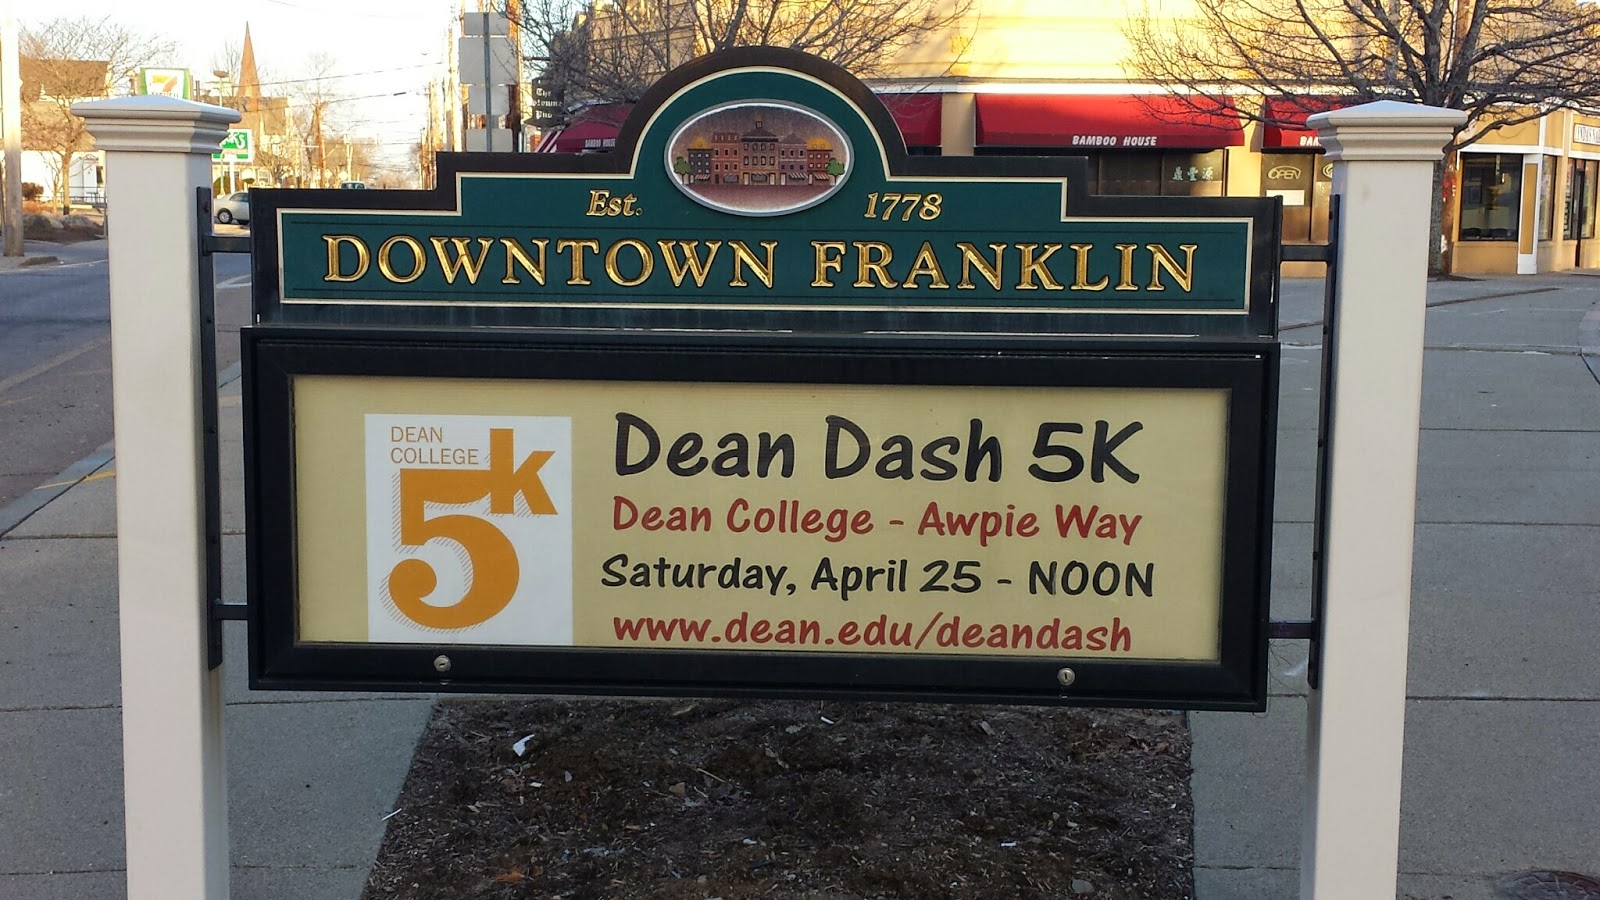 Dean Dash 5K - April 25 - noon